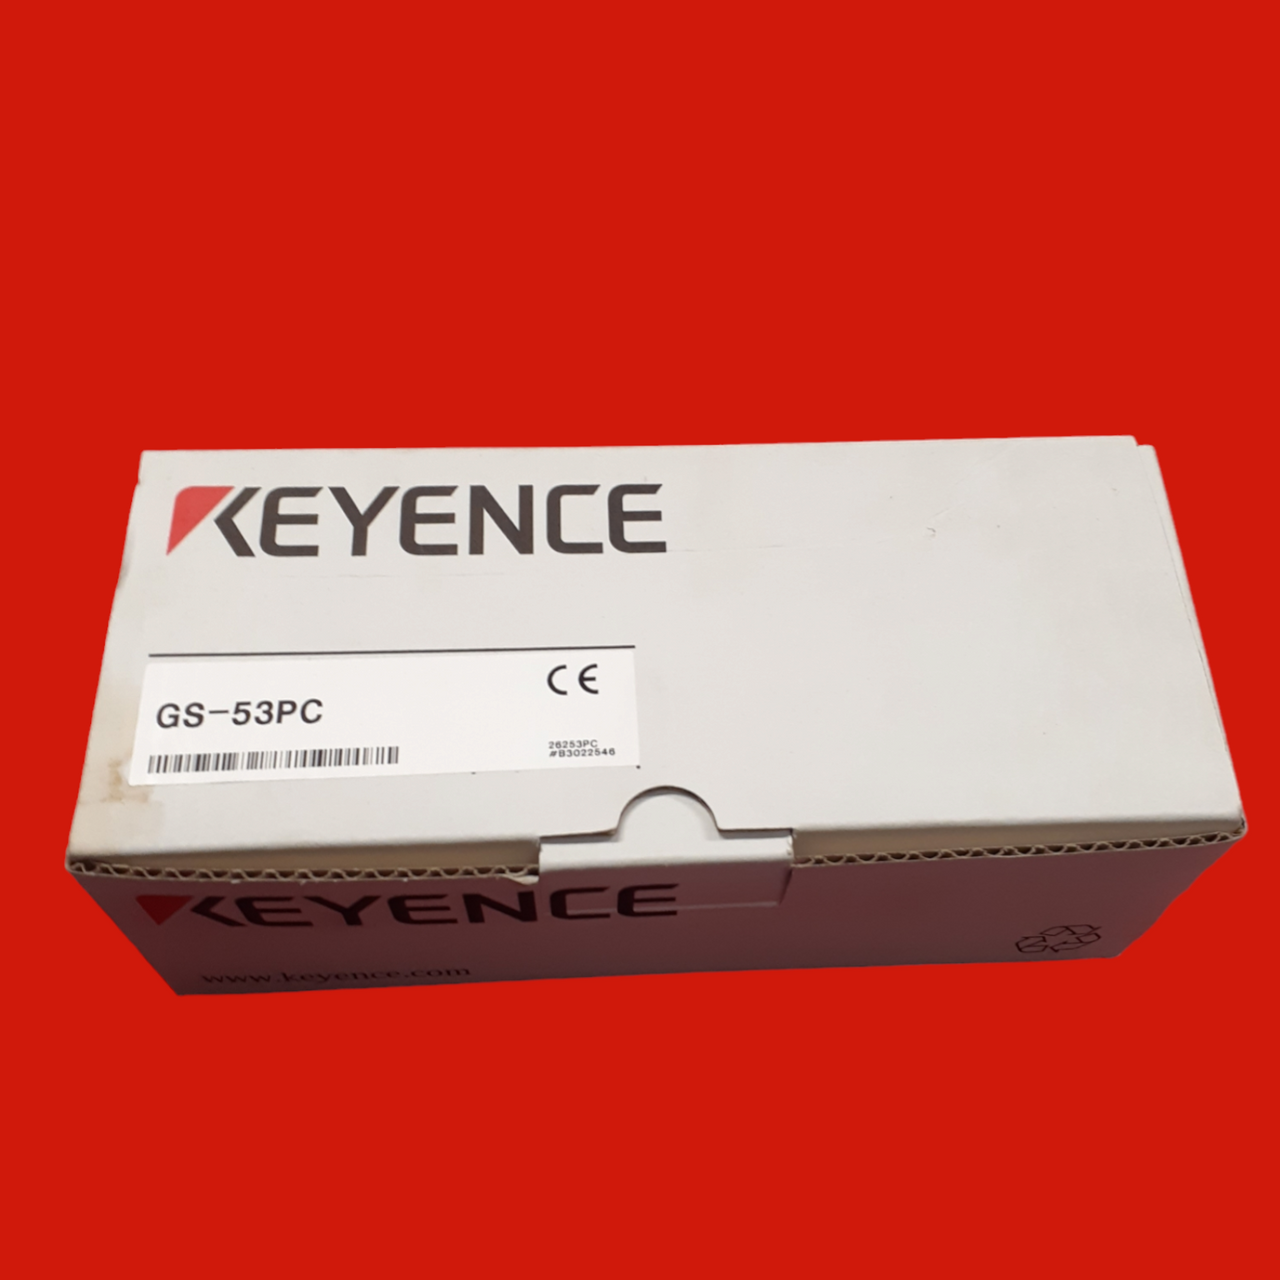 Keyence GS-53PC Safety Interlock Switch